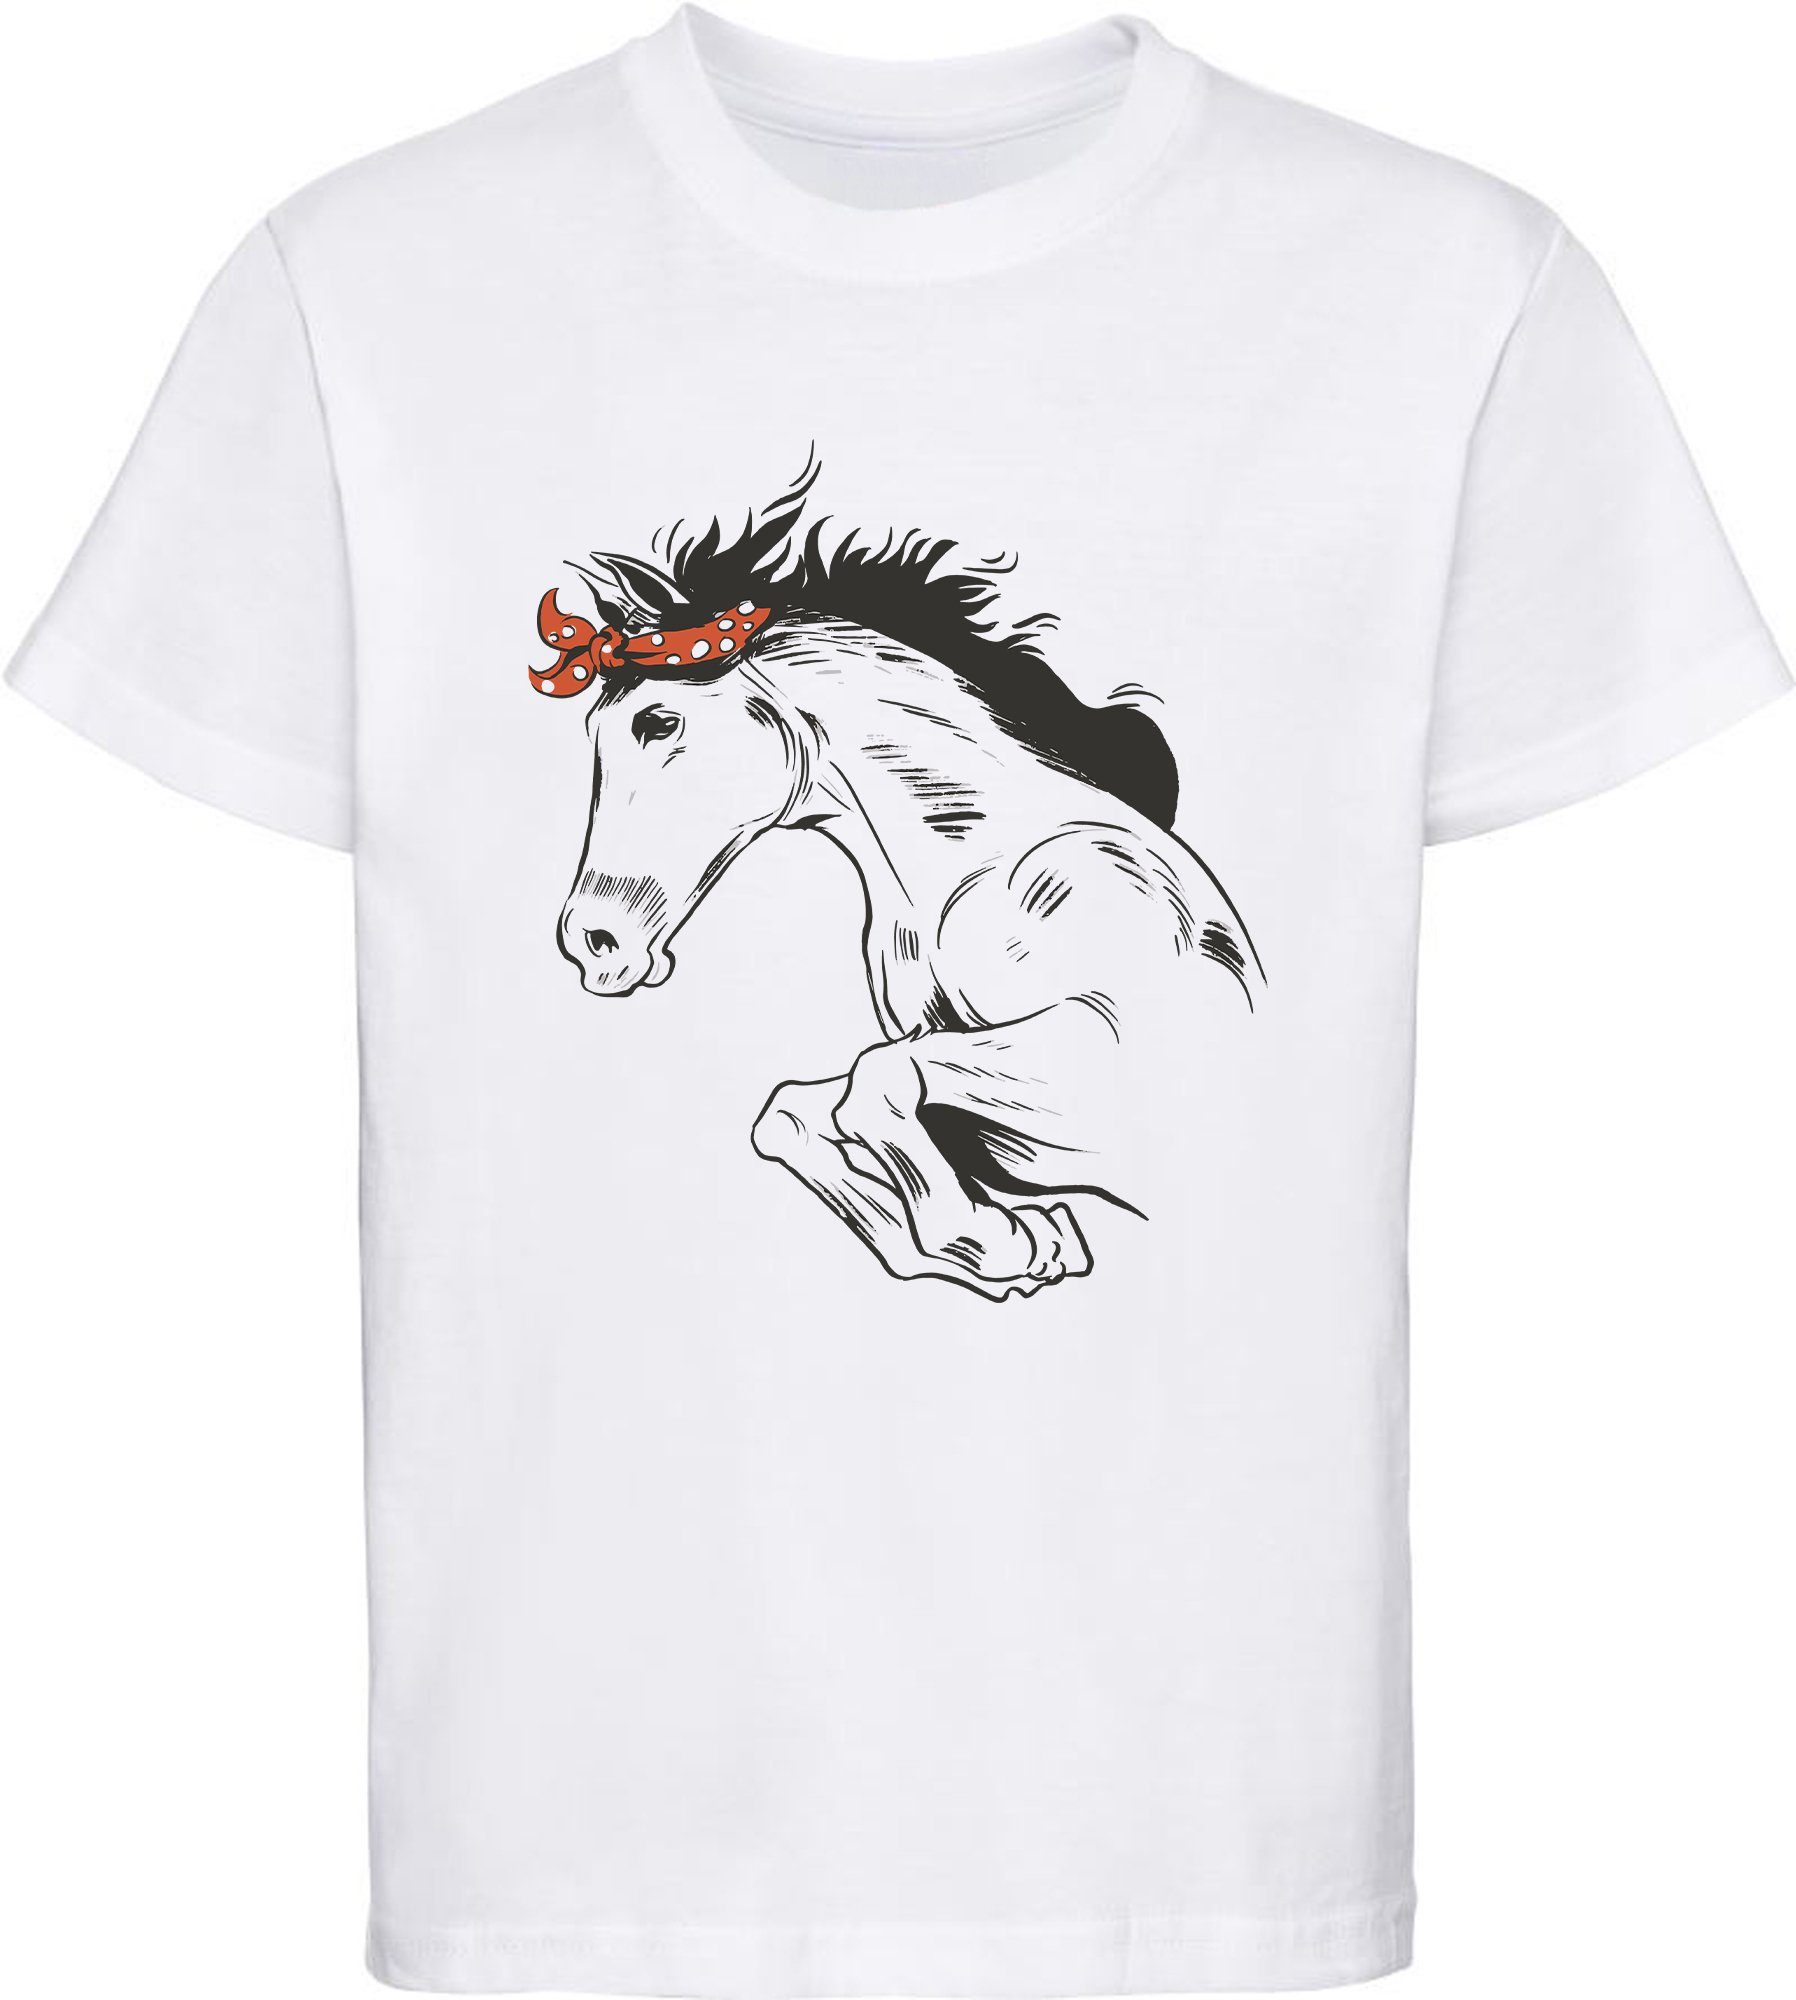 MyDesign24 Print-Shirt bedrucktes Pferde T-Shirt - Springendes Pferd mit Kopftuch Baumwollshirt mit Aufdruck, i170 weiss